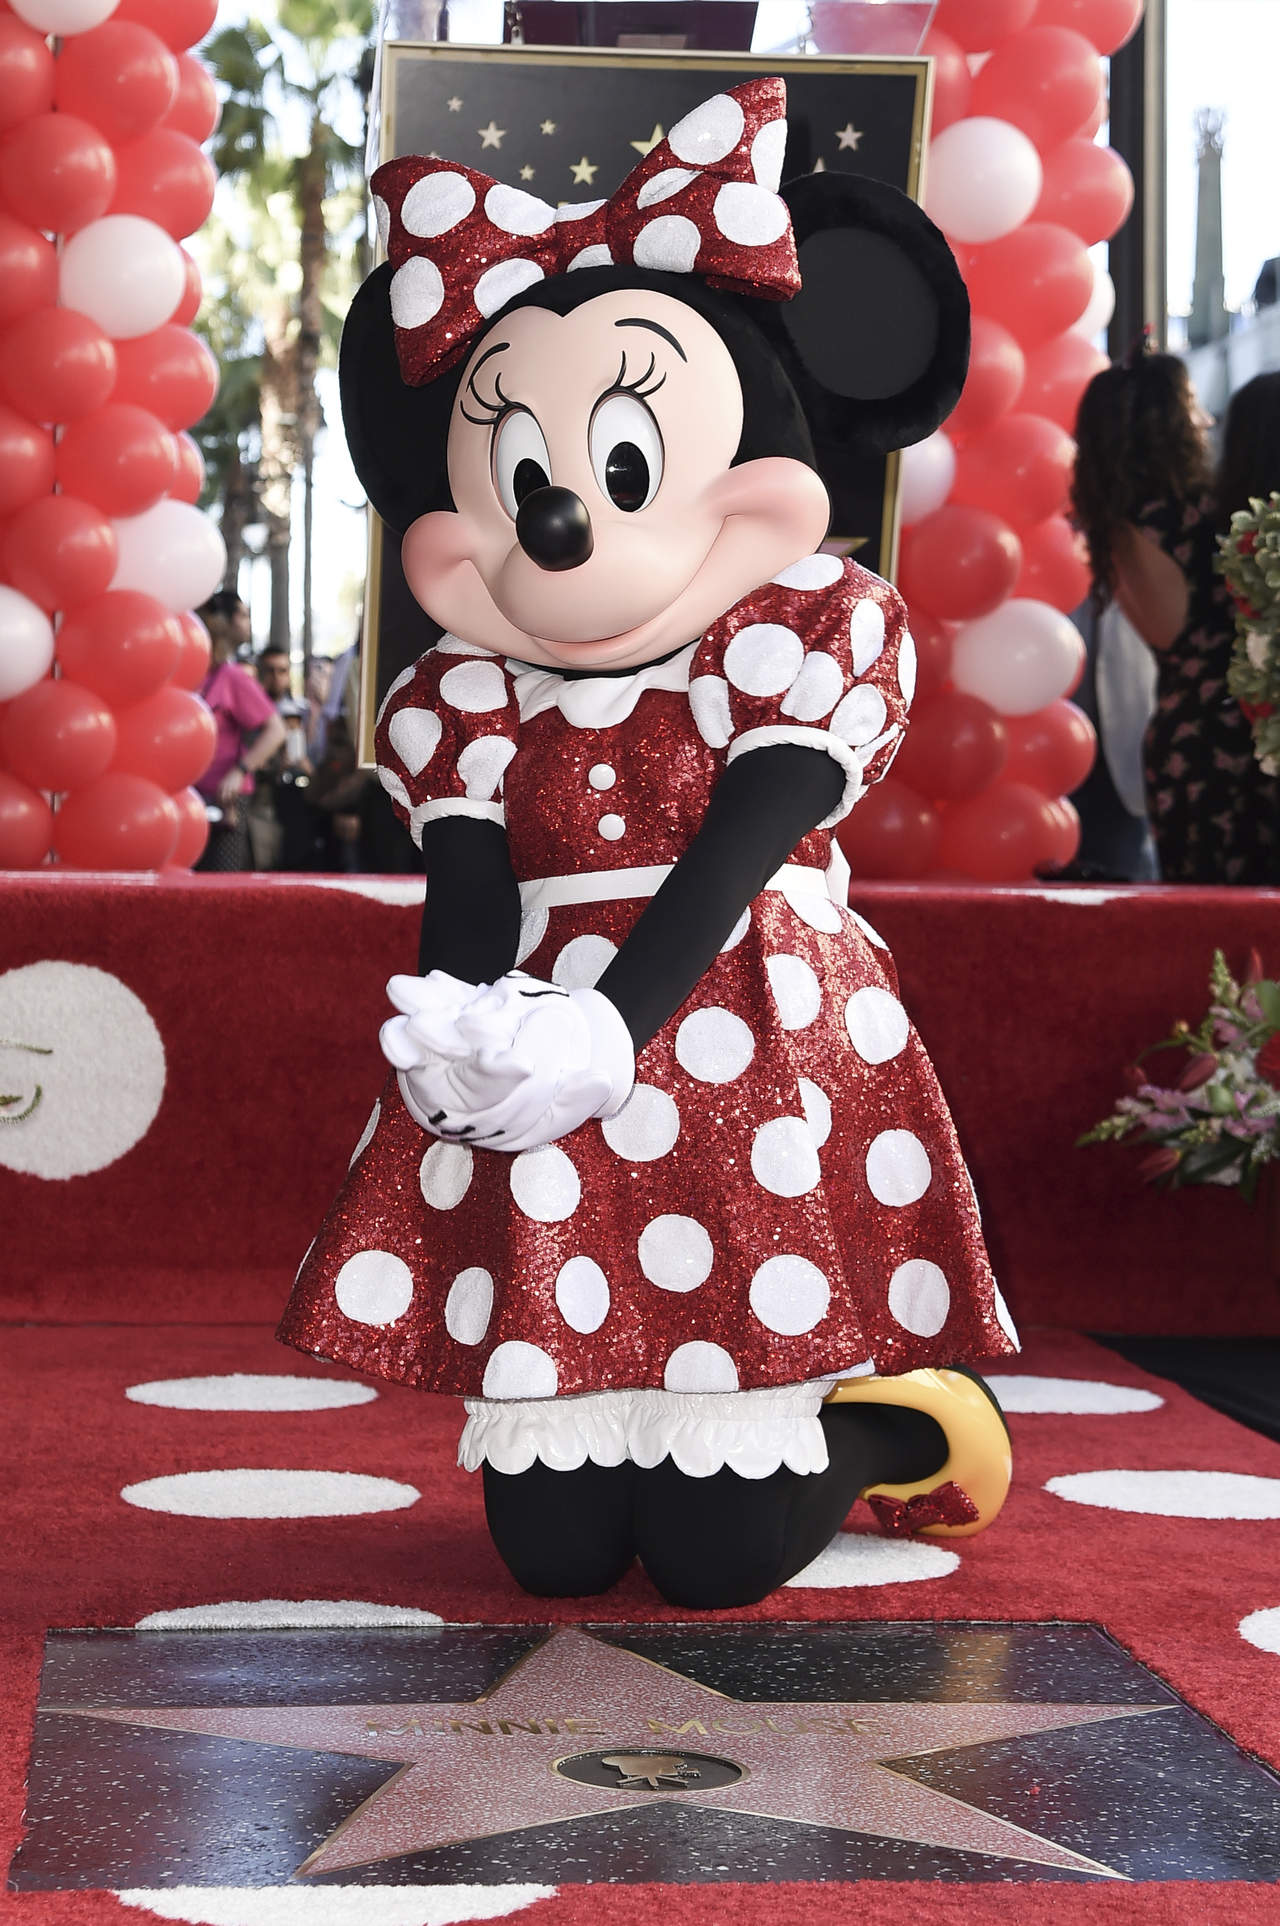 El debut oficial de Minnie Mouse en la pantalla grande fue en noviembre de 1928, por lo que el personaje ya tiene casi 90 años. (AP)